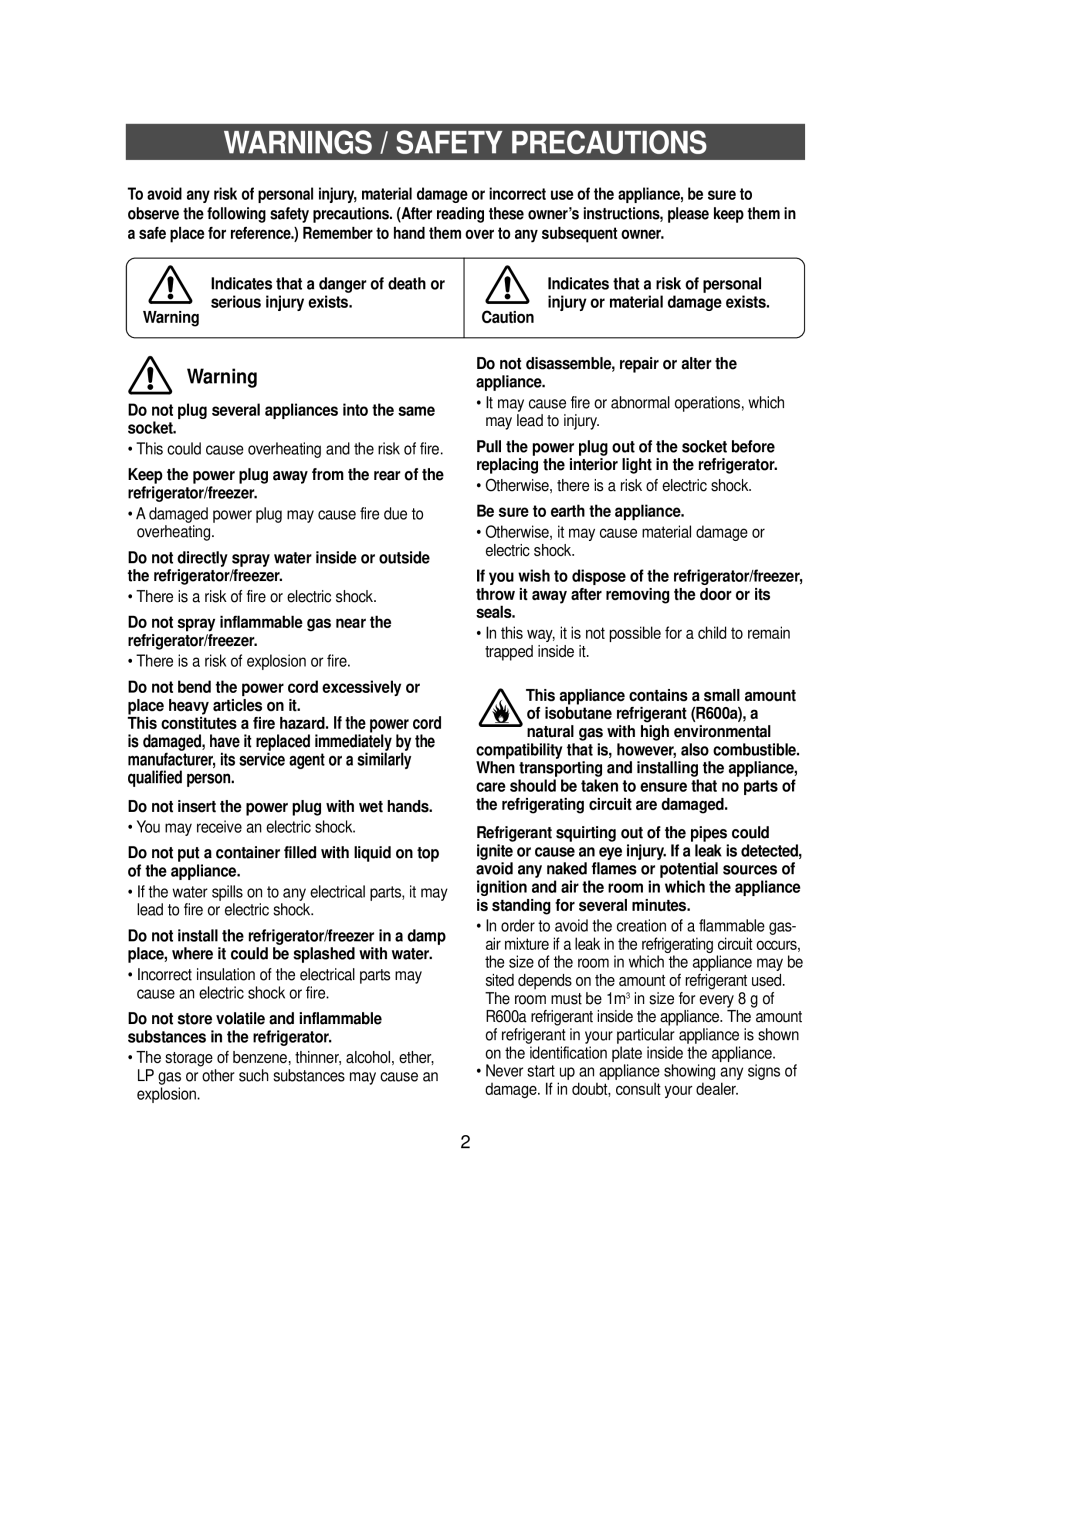 Samsung SR-L67, SR-L62, SR-L65, SR-L70 manual Warnings / Safety Precautions 